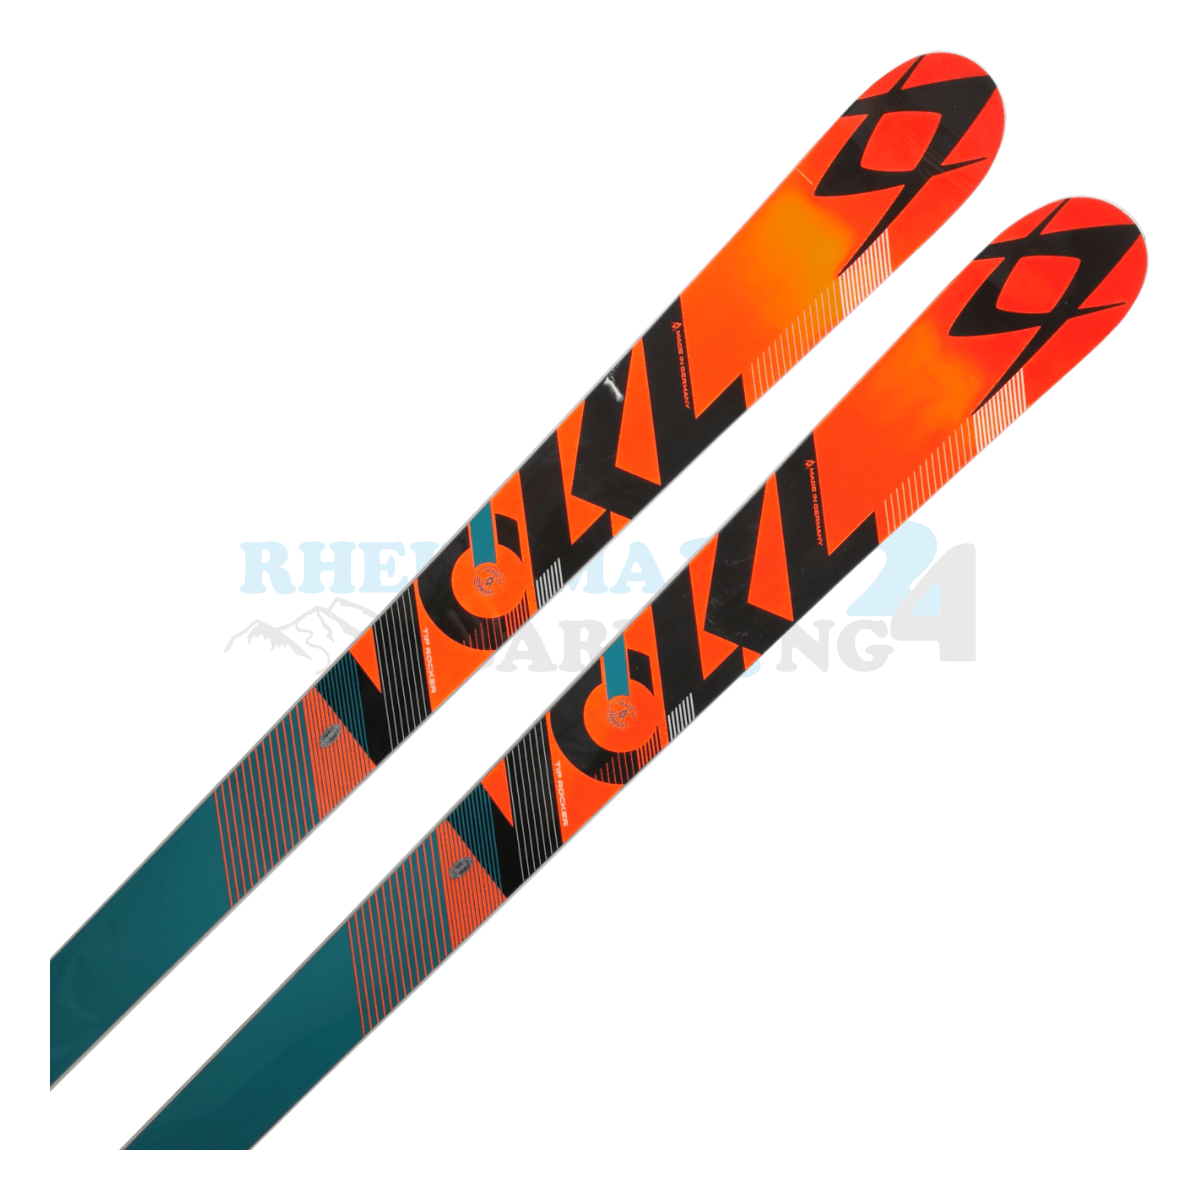 Völkl Racetiger Super-G in den Farben türkis-orange, Ansicht des oberen Teils des Skis